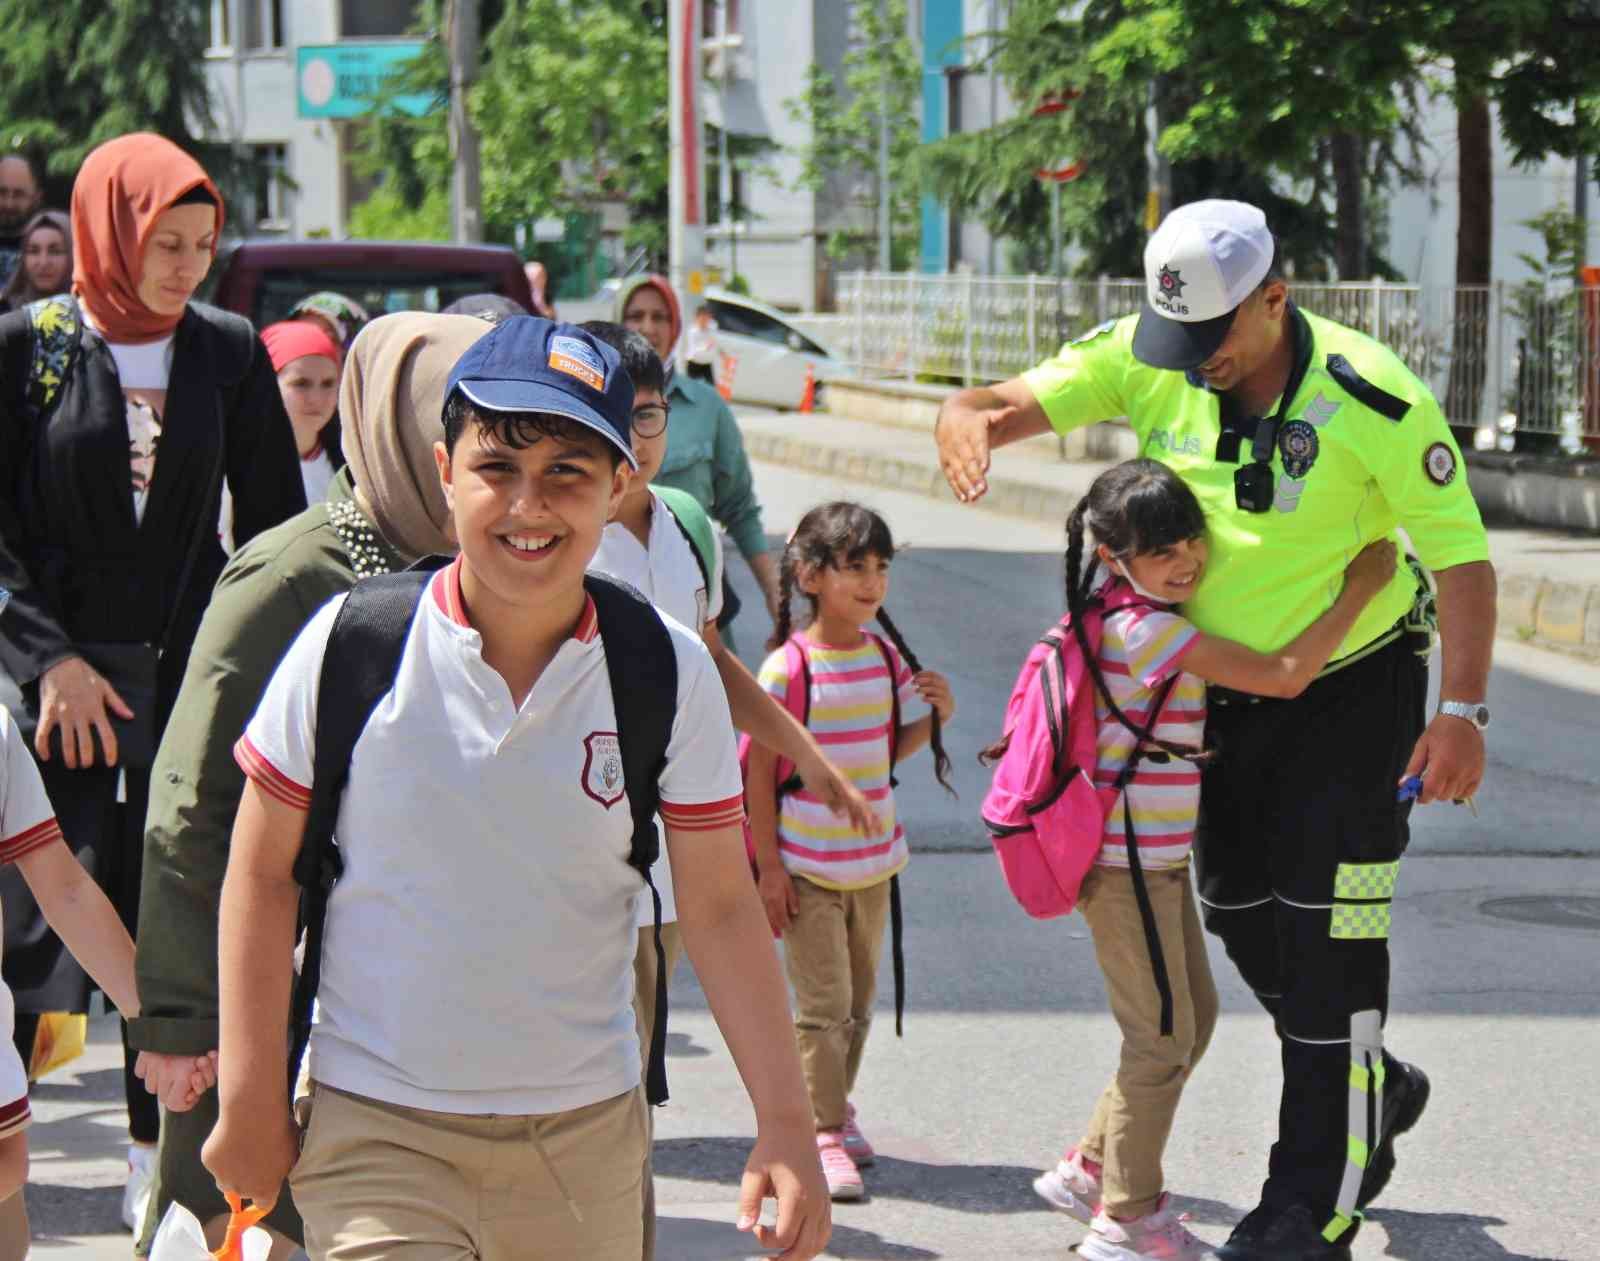 Kocaeli’de ilkokul öğrencileri için yaya geçidinde güvenlik önlemi alan trafik polisi ile miniklerin arasında oluşan bağ, görenlerin içini ...